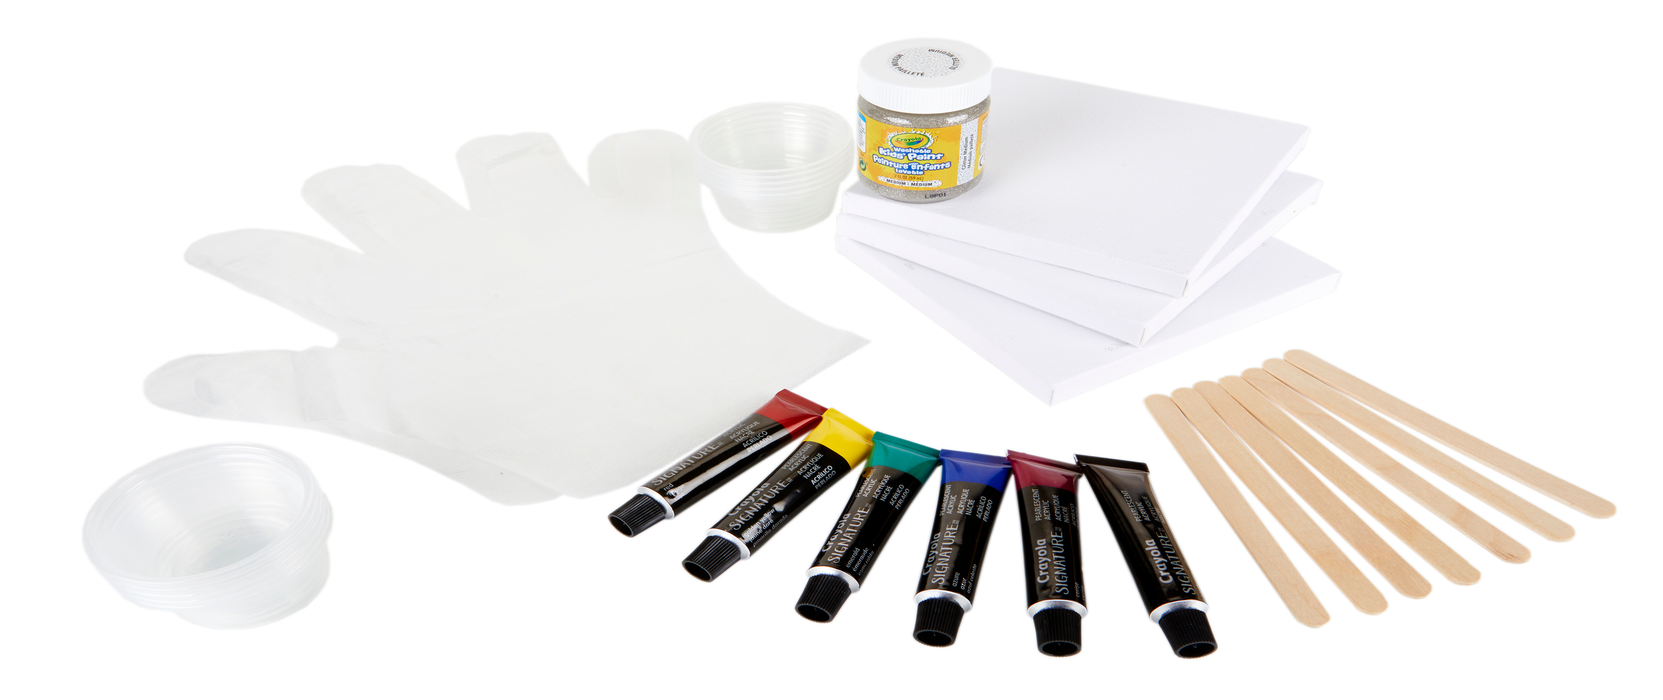 Crayola Signature Paint-Pour Canvas Art Kit